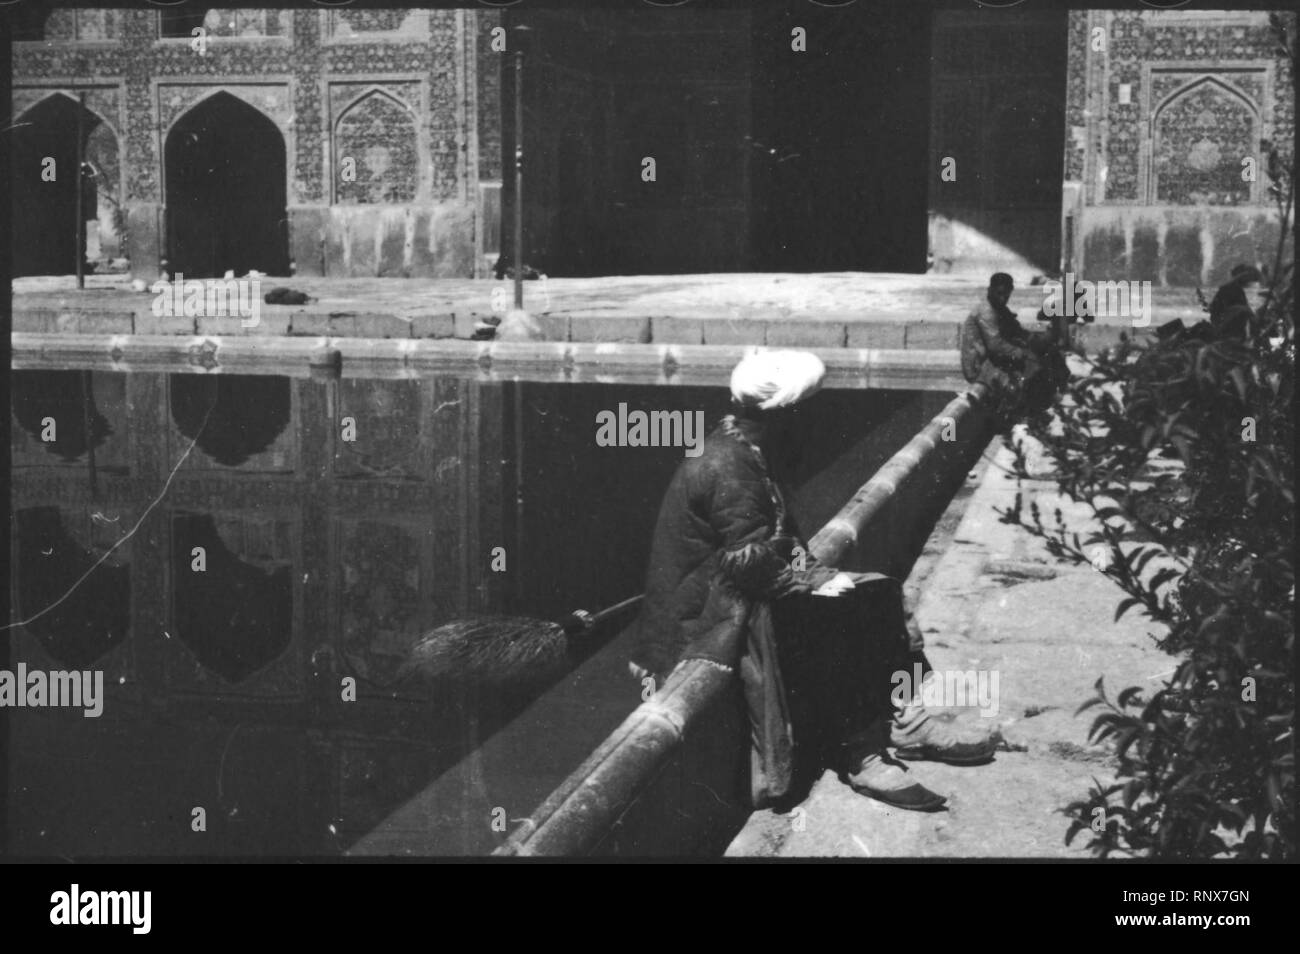 CH-NB - Persien, Isfahan- Palast der 40 Säulen (Lokalisierung unsicher) - Annemarie Schwarzenbach - SLA-Schwarzenbach-A-5-04-192. Stock Photo